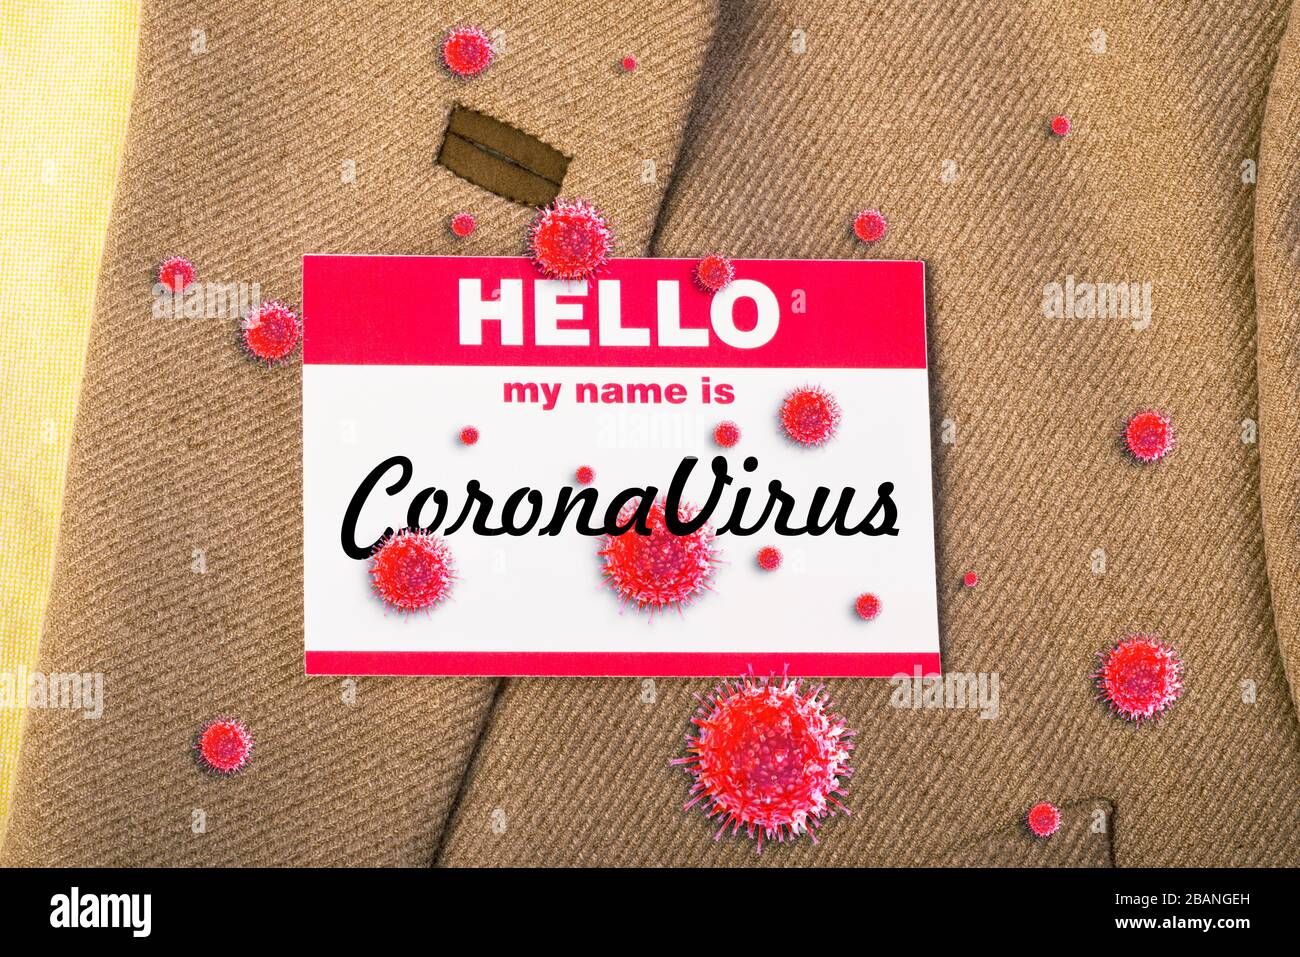 Mon nom est Coronavirus sur l'autocollant bonjour. Banque D'Images